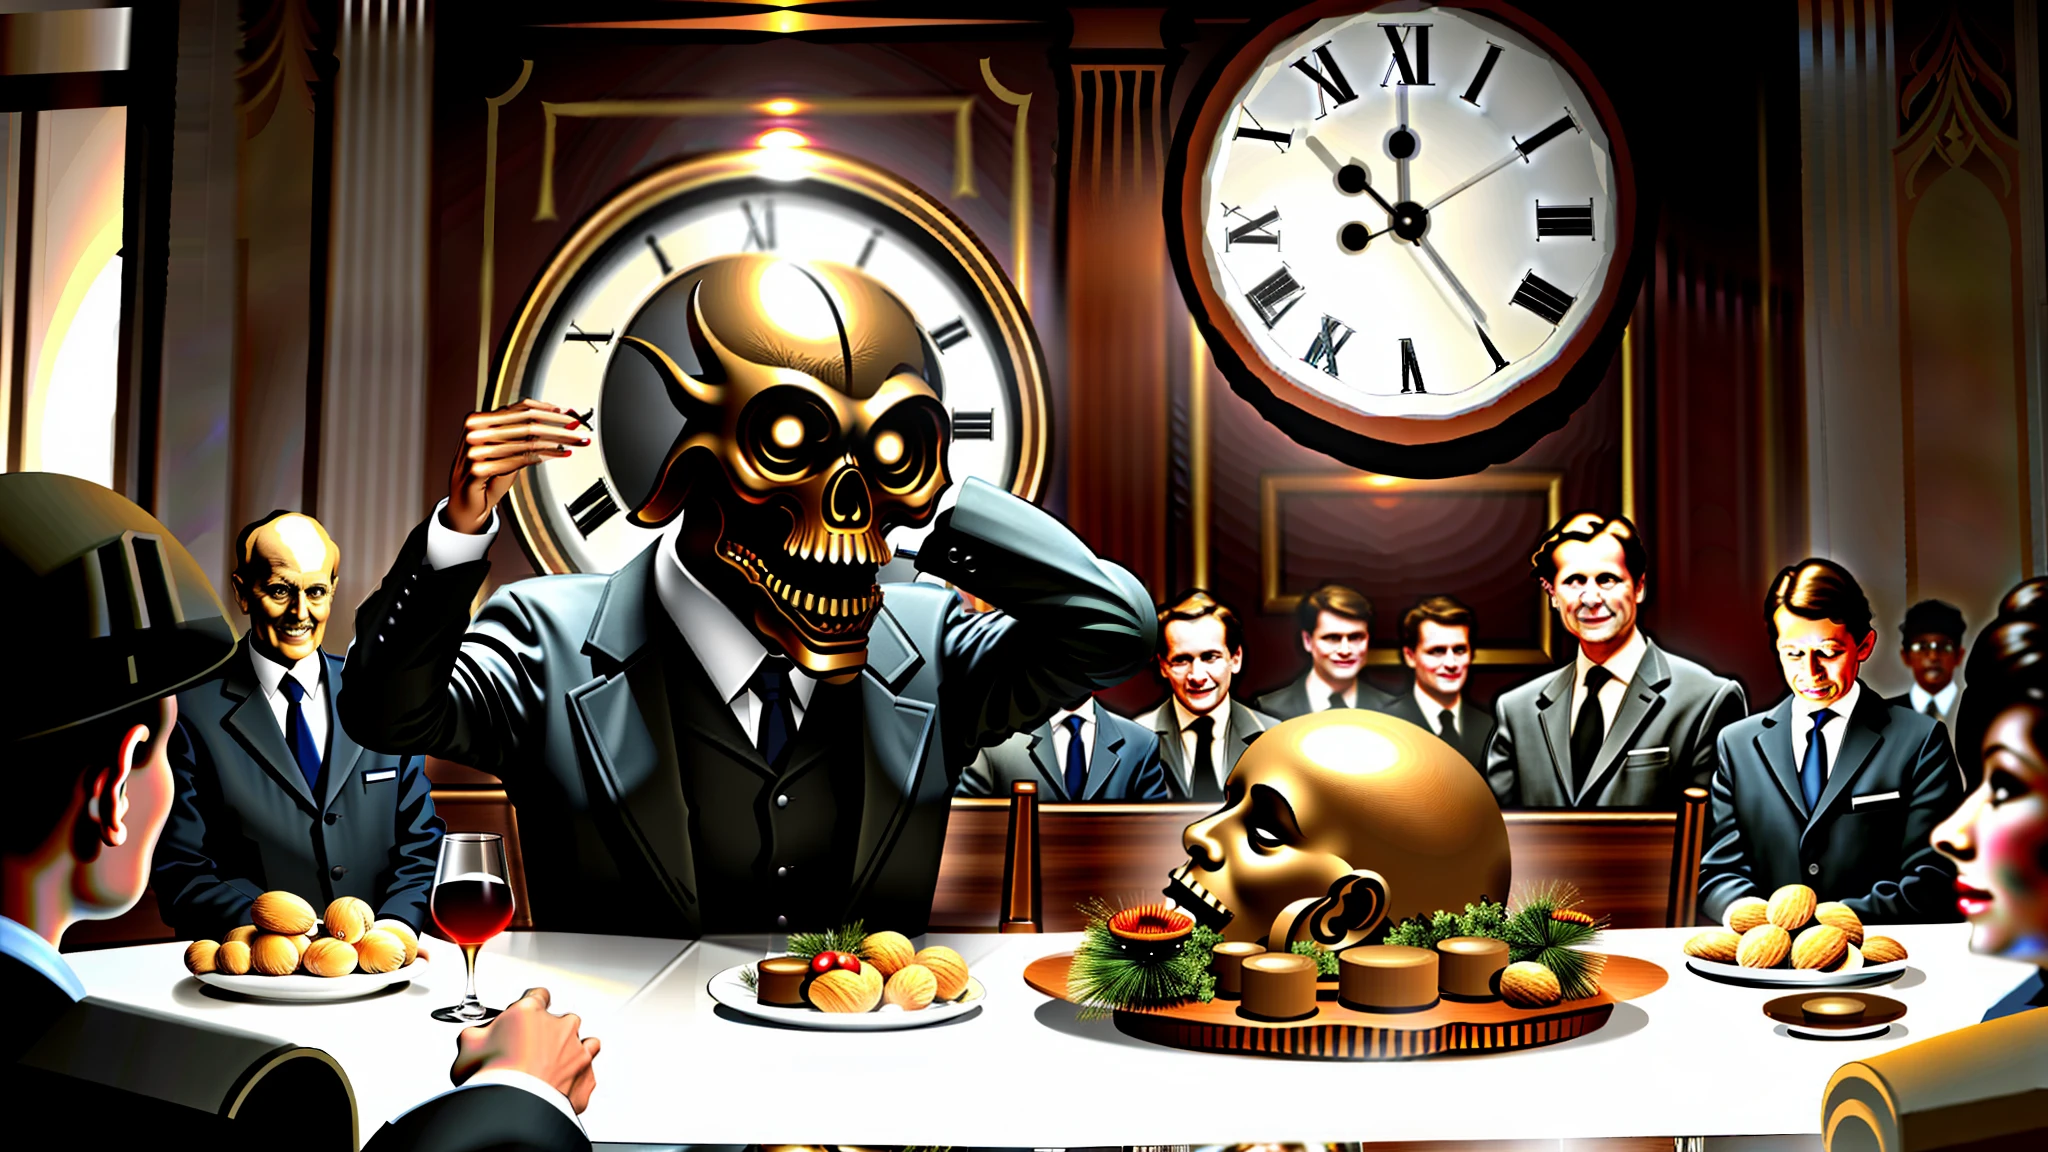 برجوازي, أكل الناس على الطاولة, الأغنياء يأكلون أجساد البشر, في الخلفية ساعة عملاقة